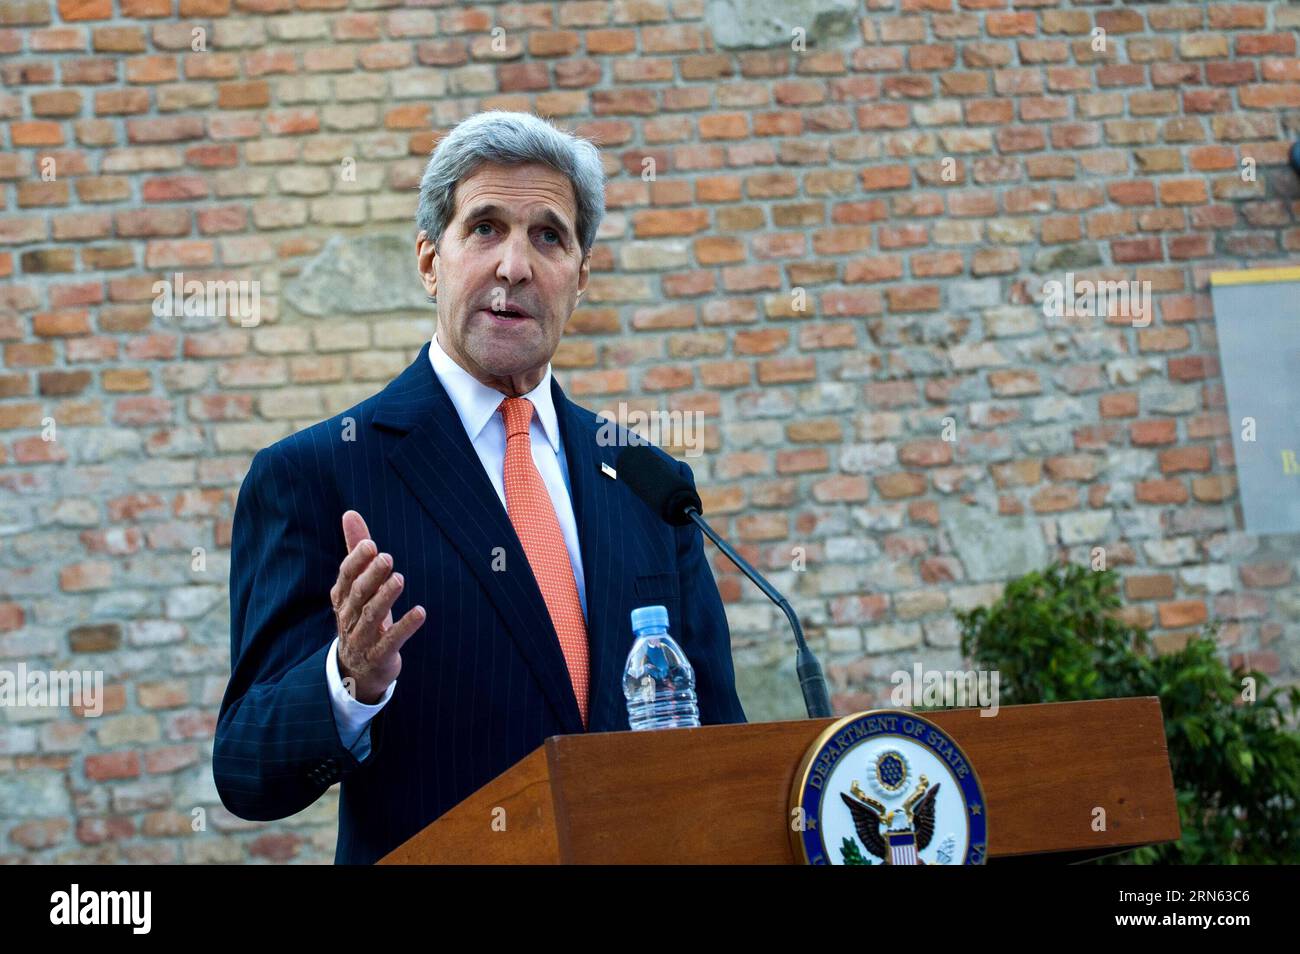 (150709) -- WIEN, 9. Juli 2015 -- US-Außenminister John Kerry spricht während einer Pressekonferenz vor dem Palais Coburg, wo die iranischen Atomgespräche stattfinden, in Wien, Österreich, 9. Juli 2015. John Kerry sagte am Donnerstag, dass einige der schwierigen Fragen in den laufenden Atomgesprächen hier noch ungelöst seien und dass sehr bald harte Entscheidungen getroffen werden müssten. ) ÖSTERREICH-WIEN-IRAN NUKLEARGESPRÄCHE-JOHN KERRY QianxYi PUBLICATIONxNOTxINxCHN 150709 Wien 9. Juli 2015 US-Außenminister John Kerry spricht auf einer Pressekonferenz vor Palais Coburg, auf der die iranischen Nukleargespräche stattfinden Stockfoto